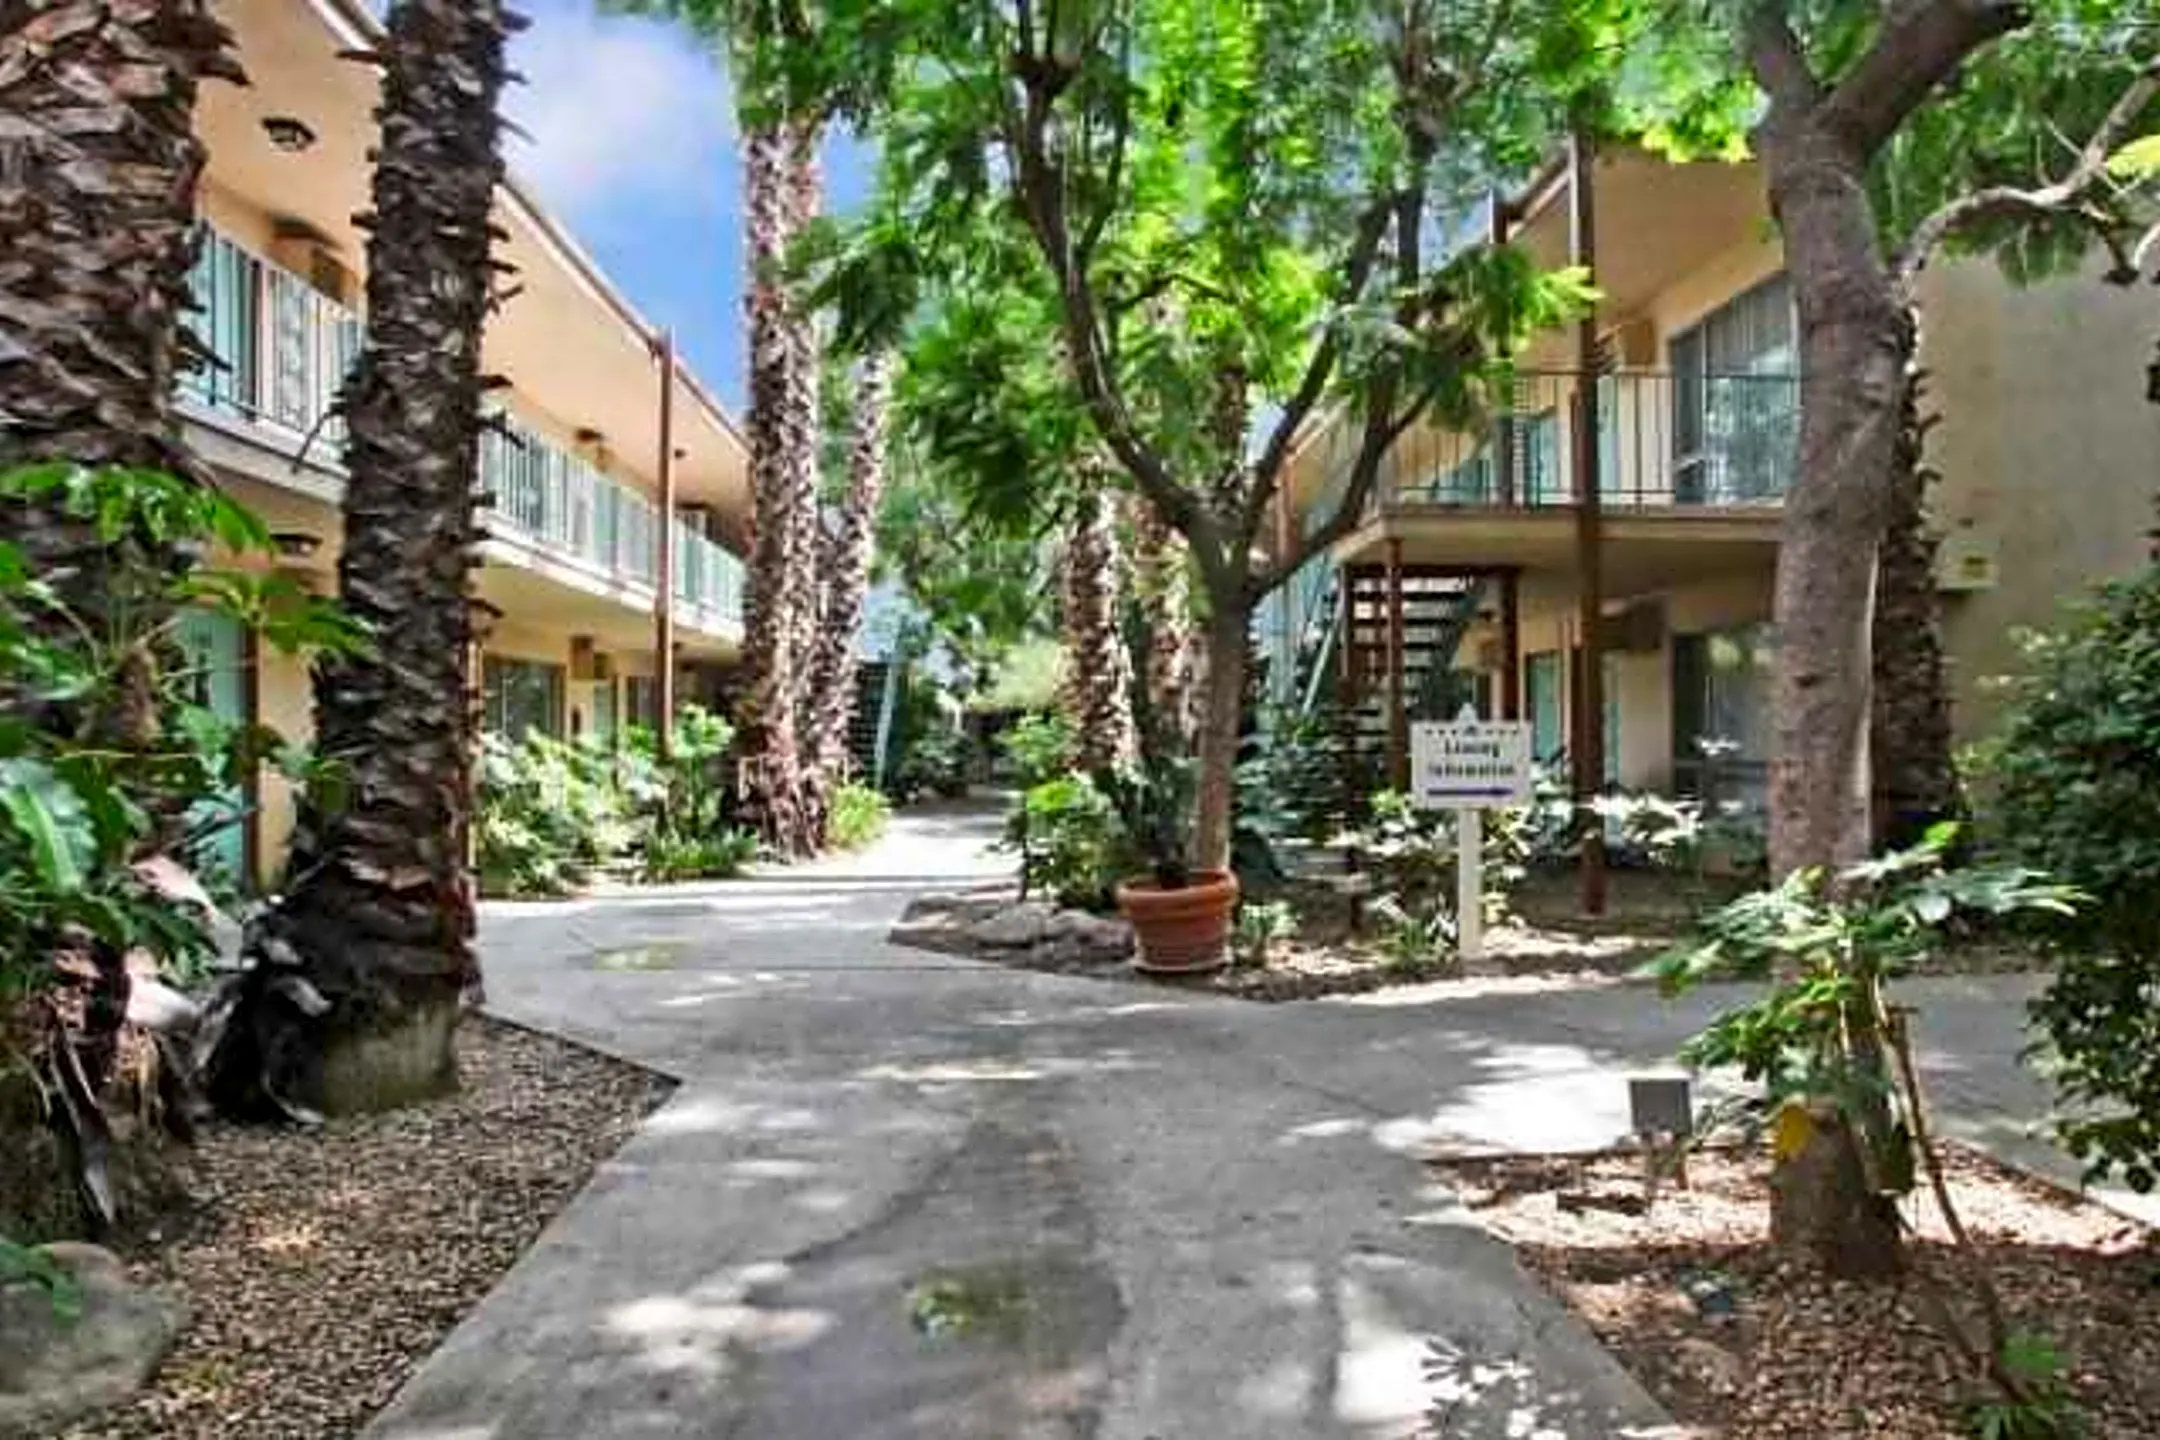 Villa Santa Fe Apartments - West Covina, CA